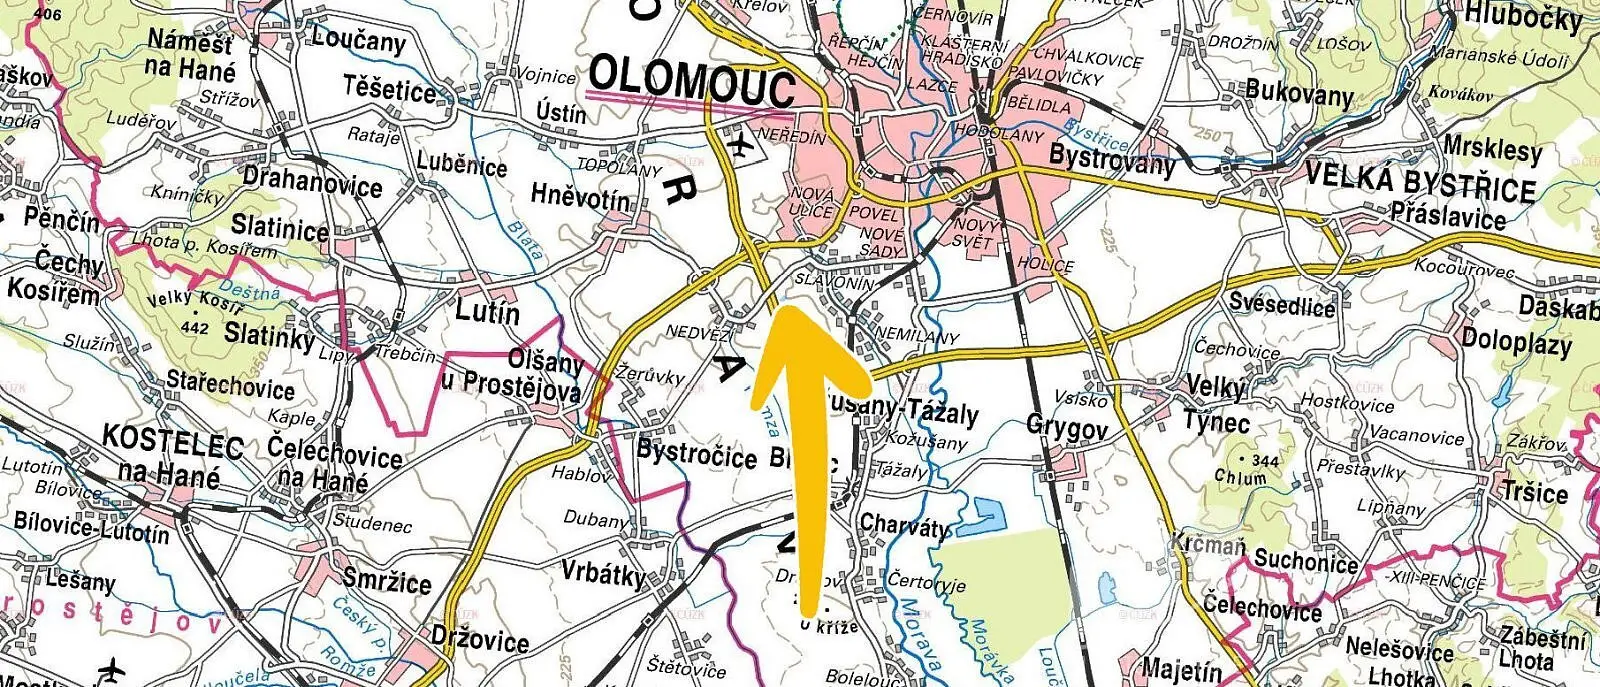 Olomouc - Slavonín